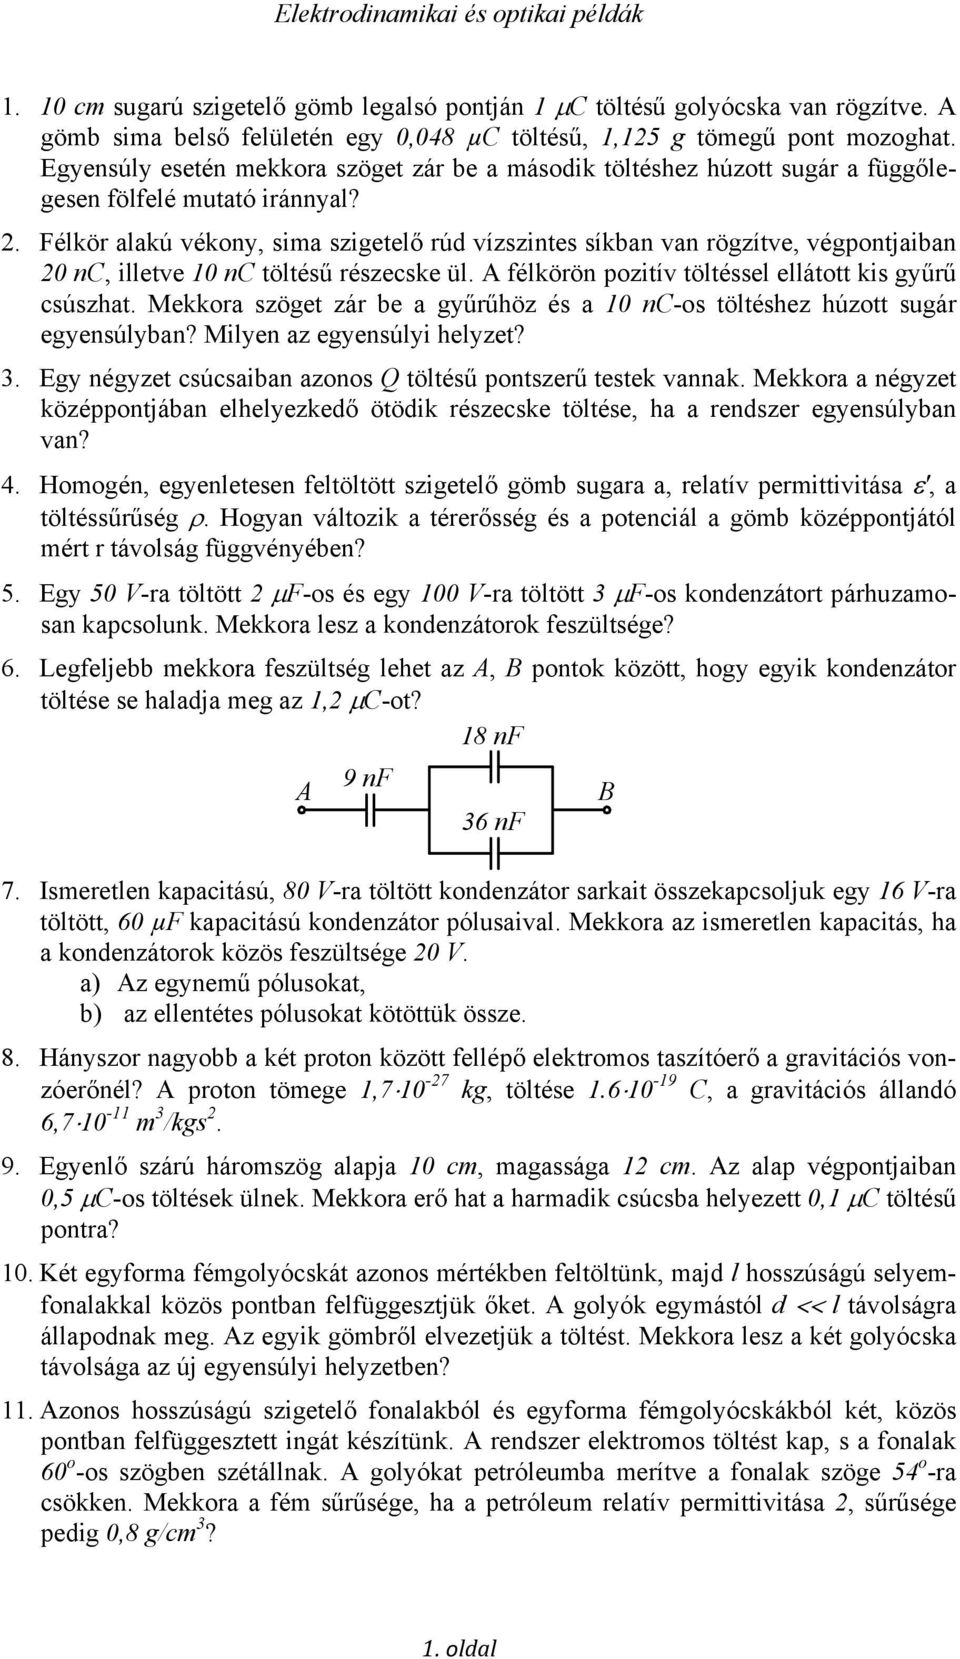 Elektrodinamikai és optikai példák - PDF Ingyenes letöltés